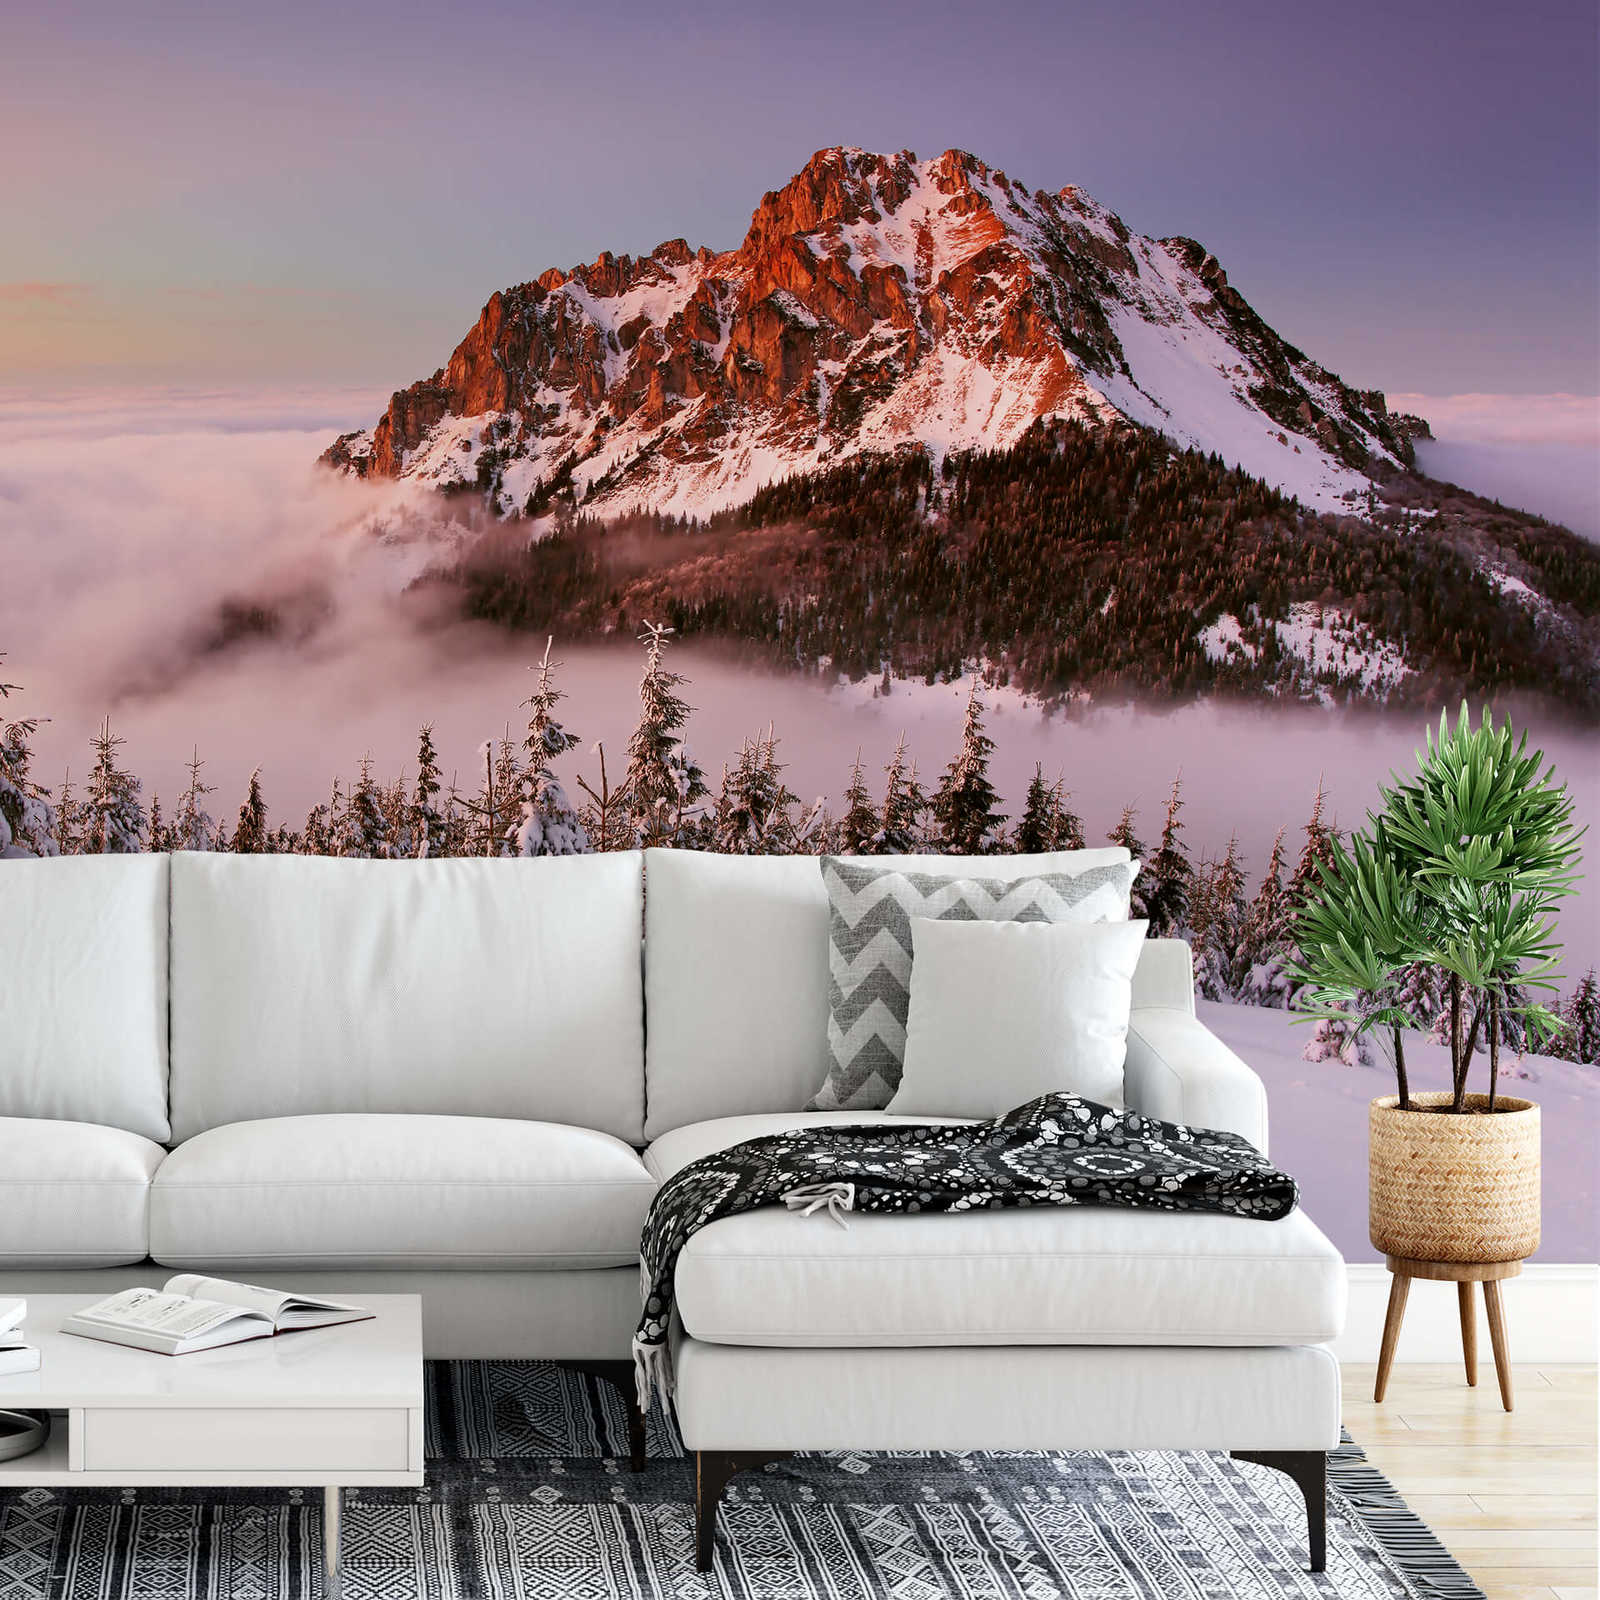             Papier peint panoramique sommet de montagne avec neige - blanc, marron, vert
        